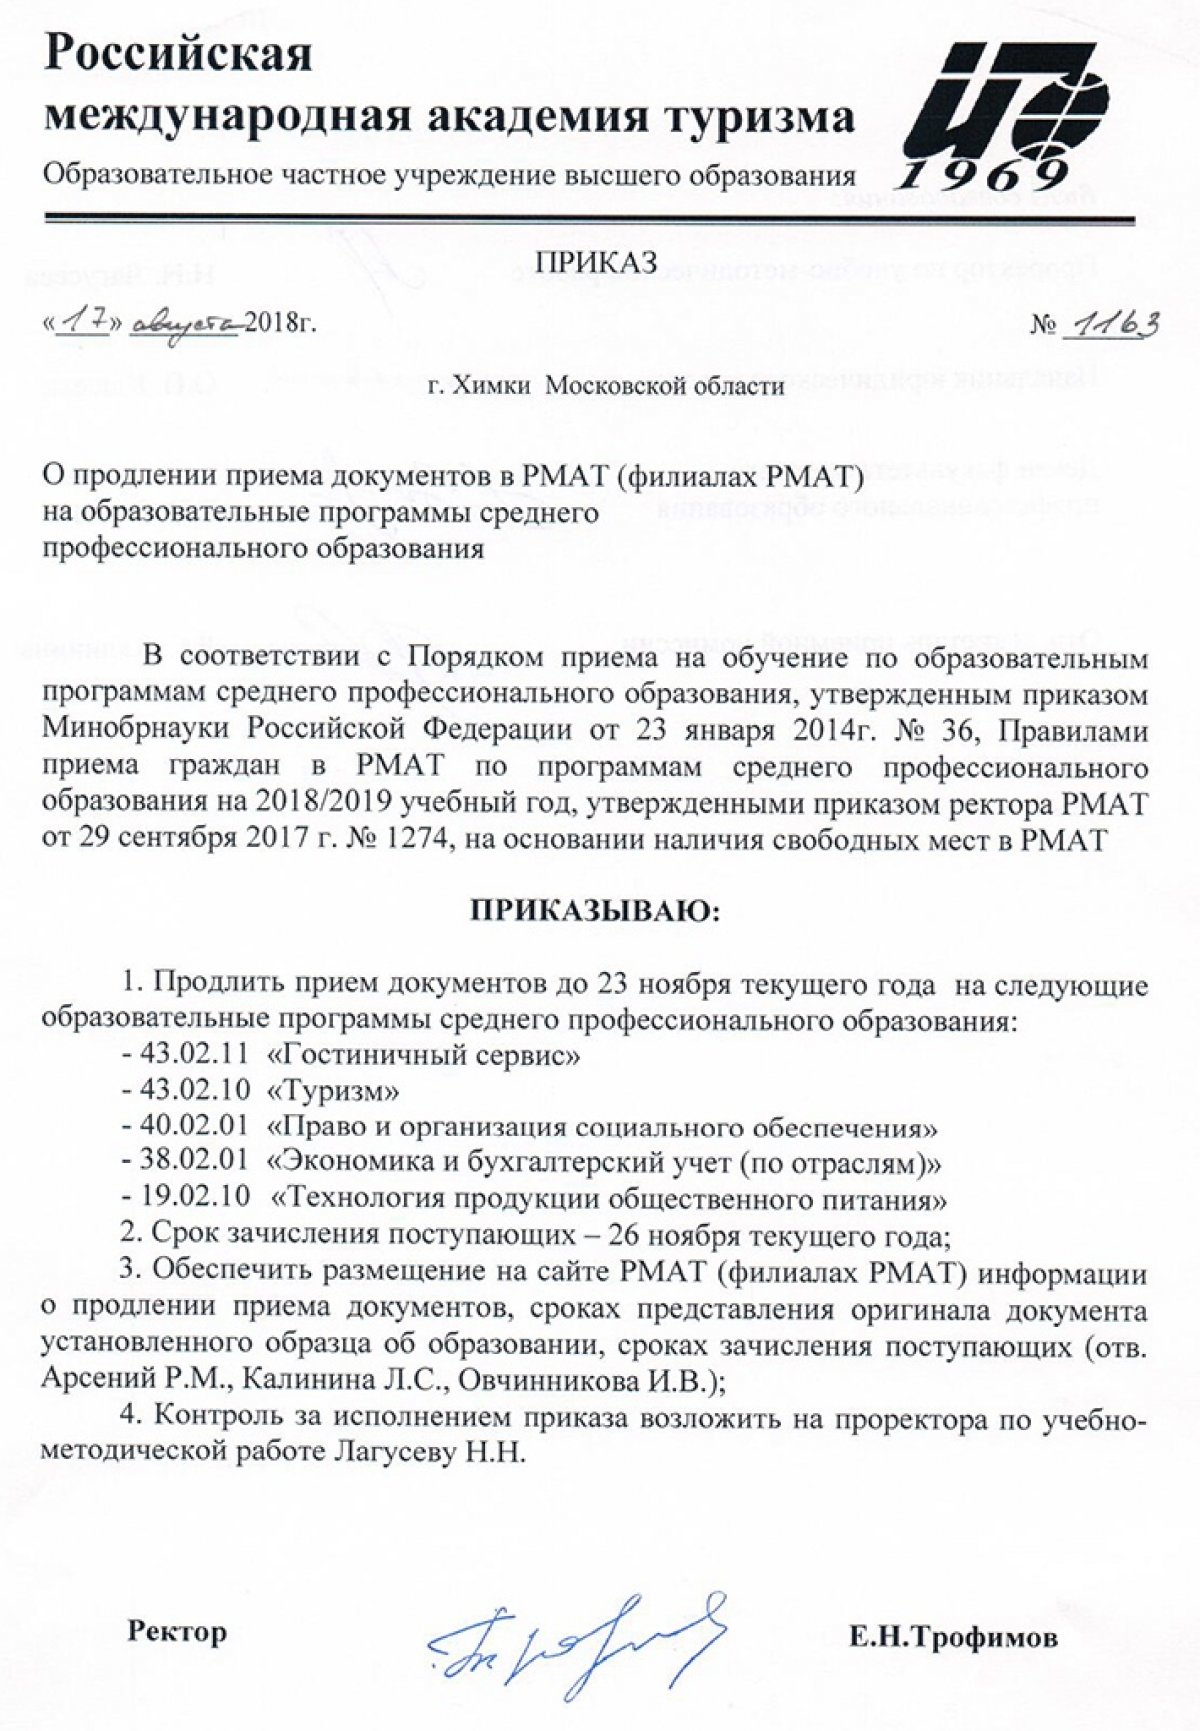 Продлен прием документов на программы среднего профессионального образования www.rmat.ru/runews/?r67_id=3134